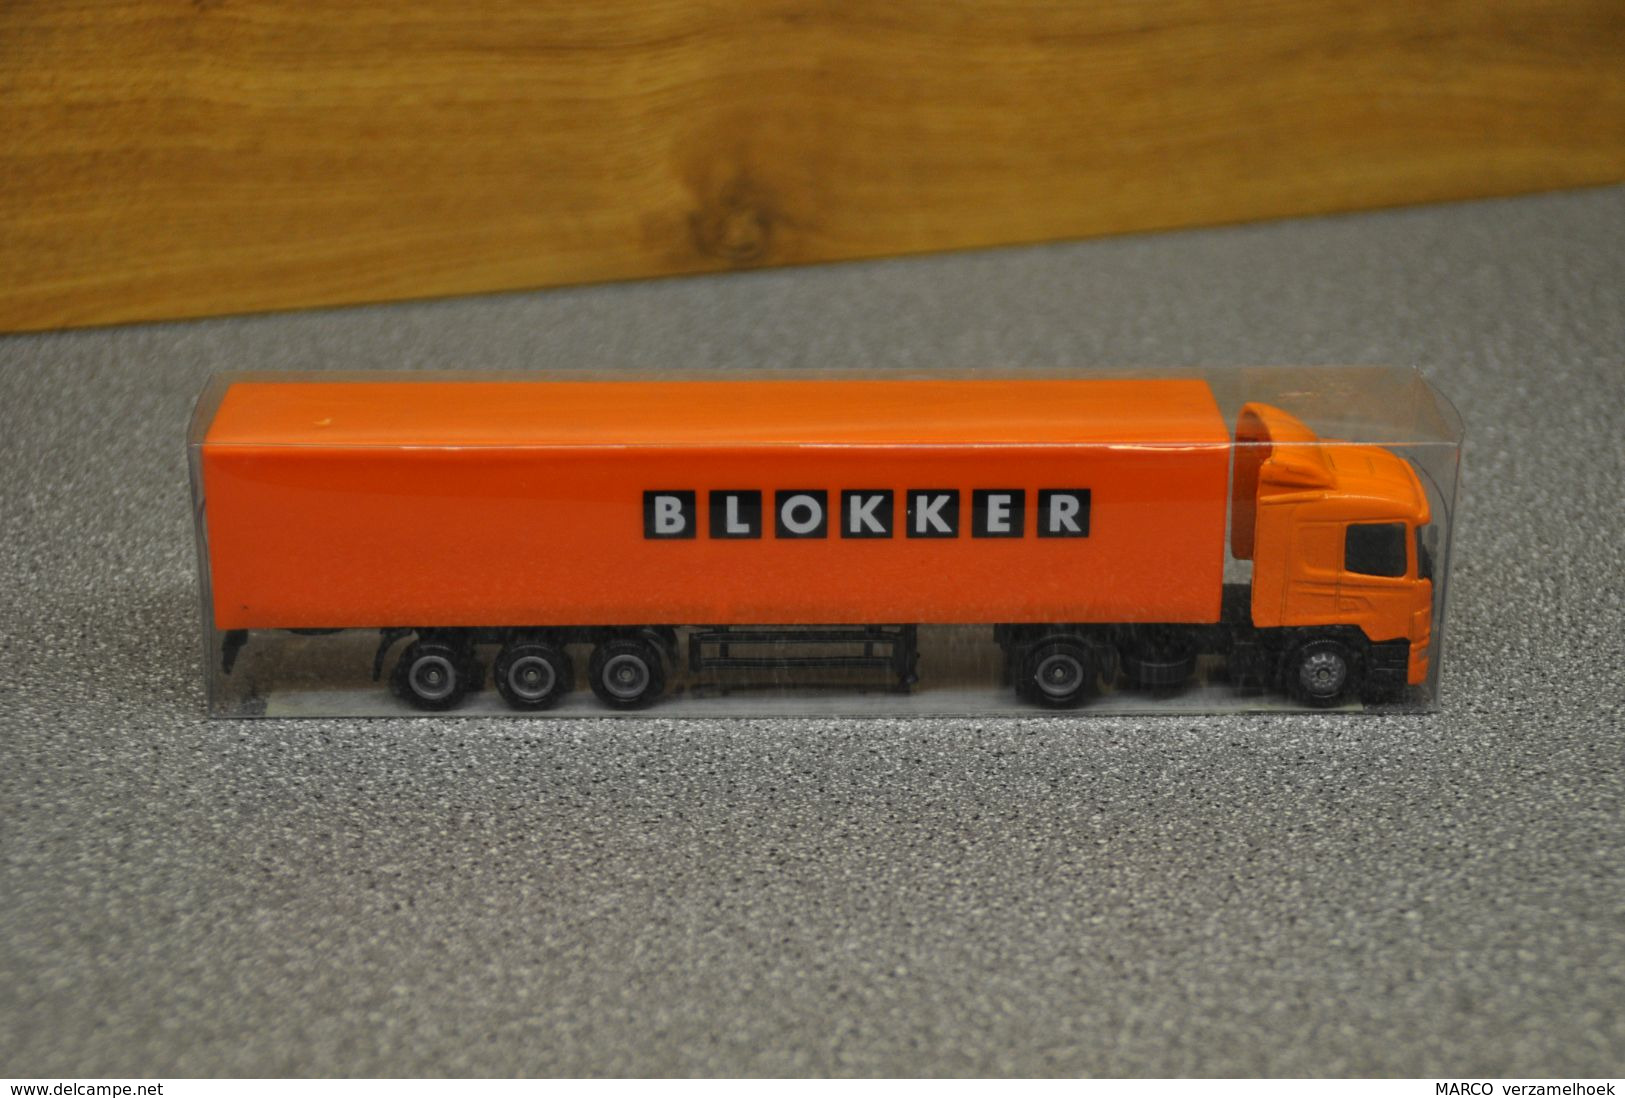 Blokker Hoorn-amsterdam Scale 1:87 Scania - LKW, Busse, Baufahrzeuge